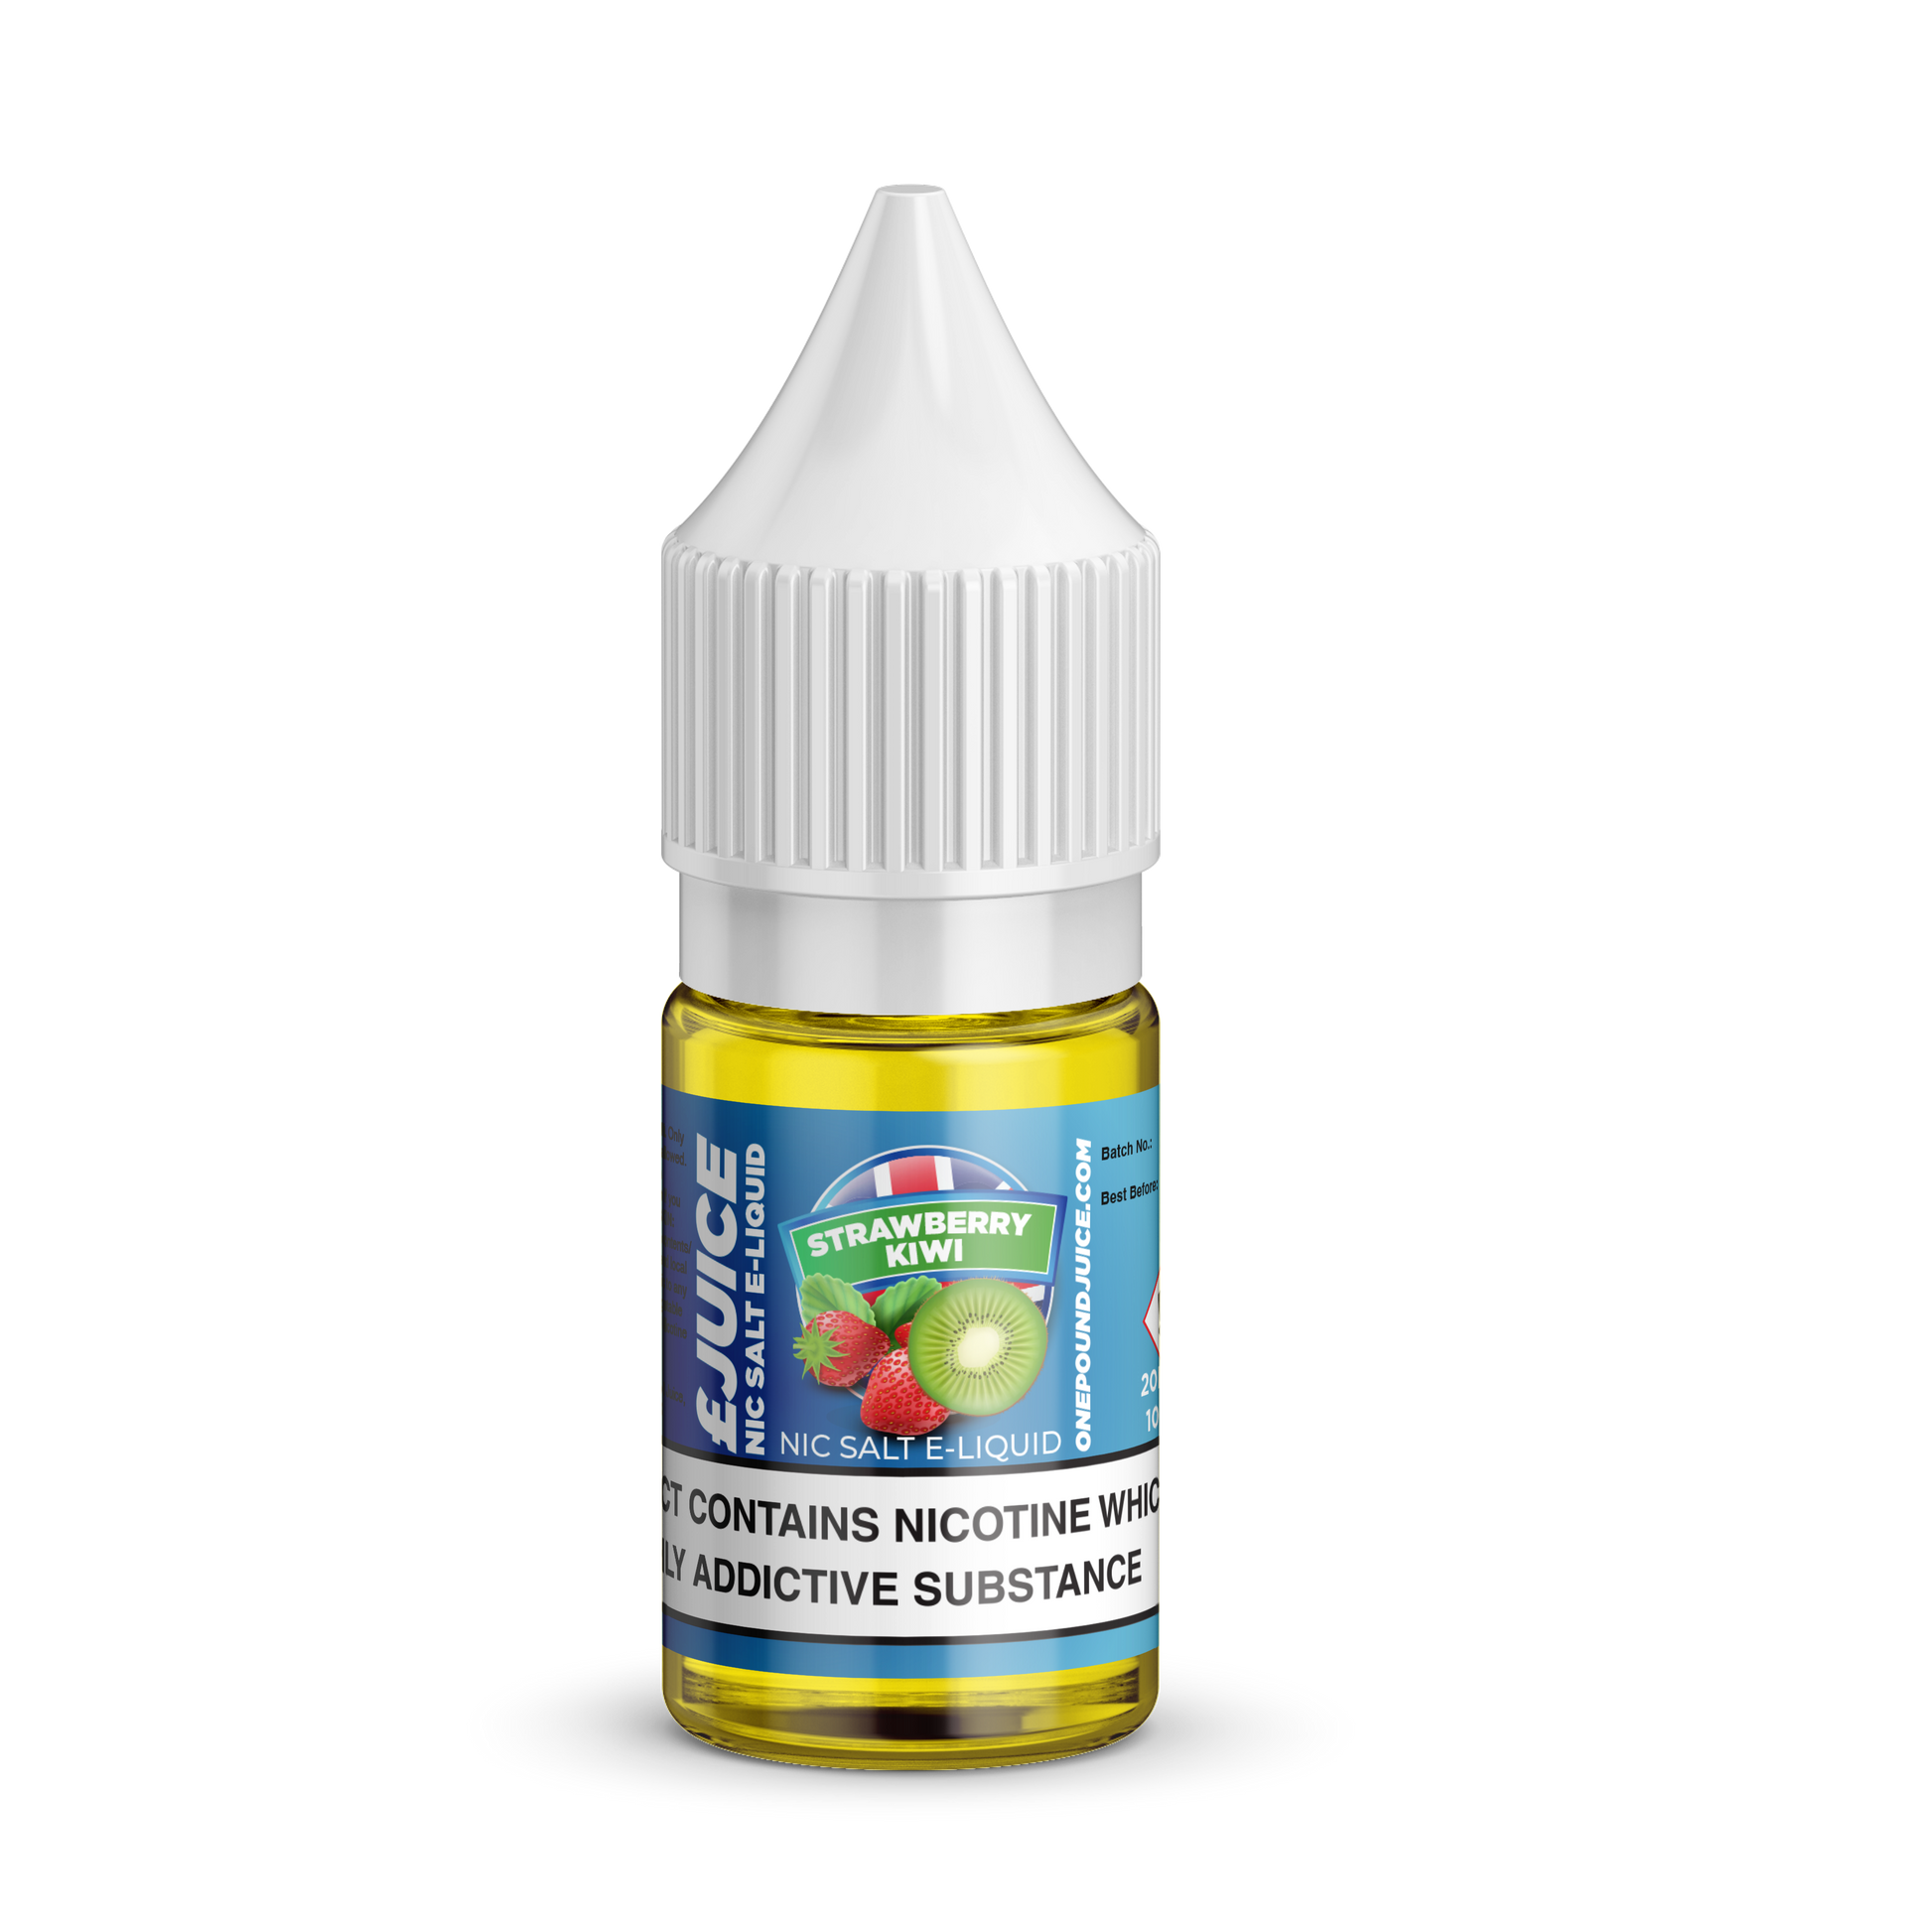 Strawberry Kiwi Nic Salt E-Liquid by One Pound Juice